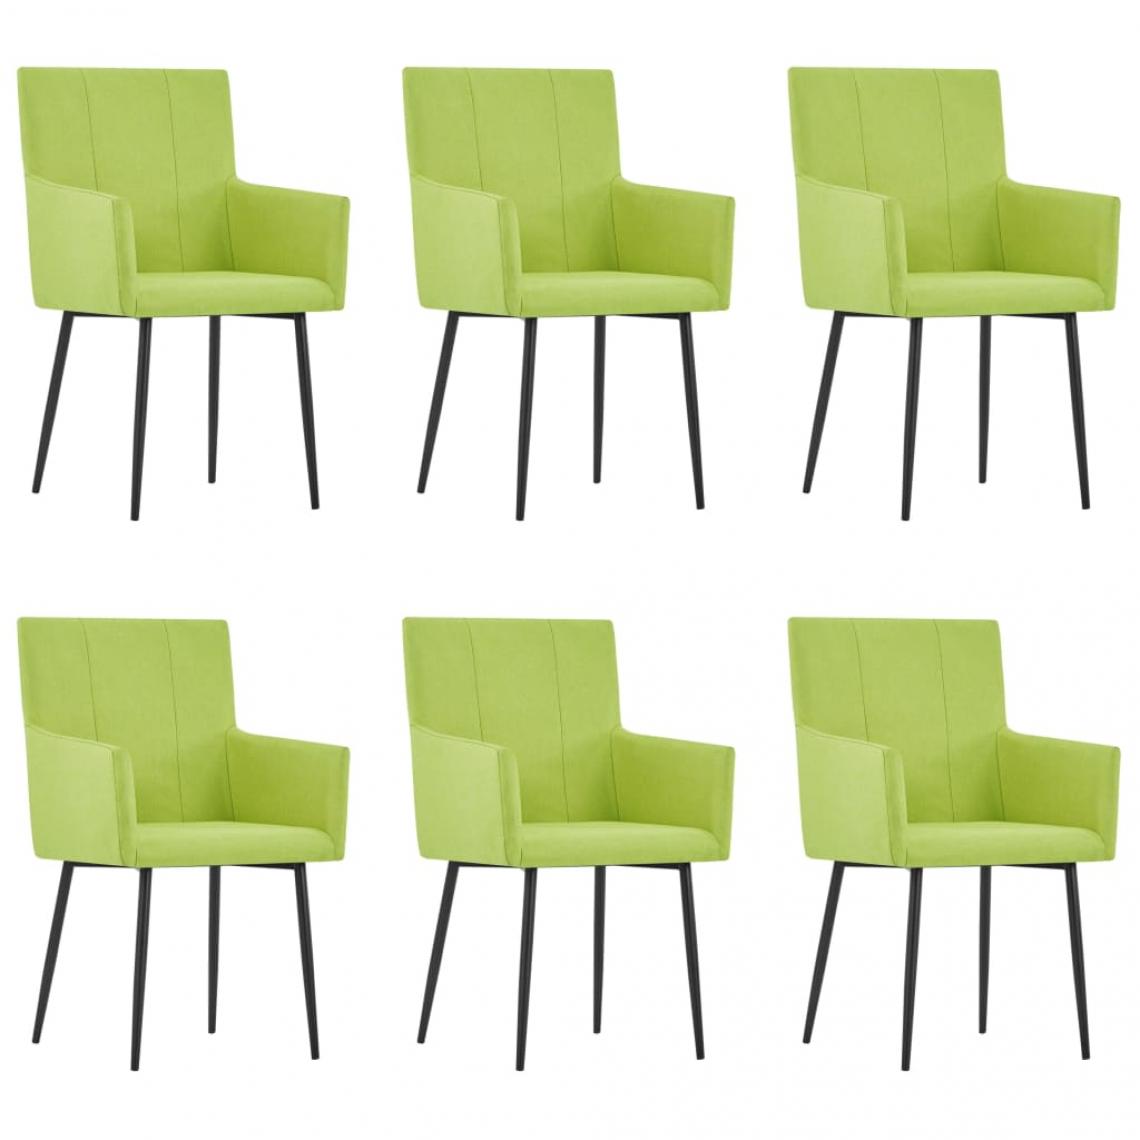 Decoshop26 - Lot de 6 chaises de salle à manger cuisine avec accoudoirs design moderne tissu vert CDS022143 - Chaises